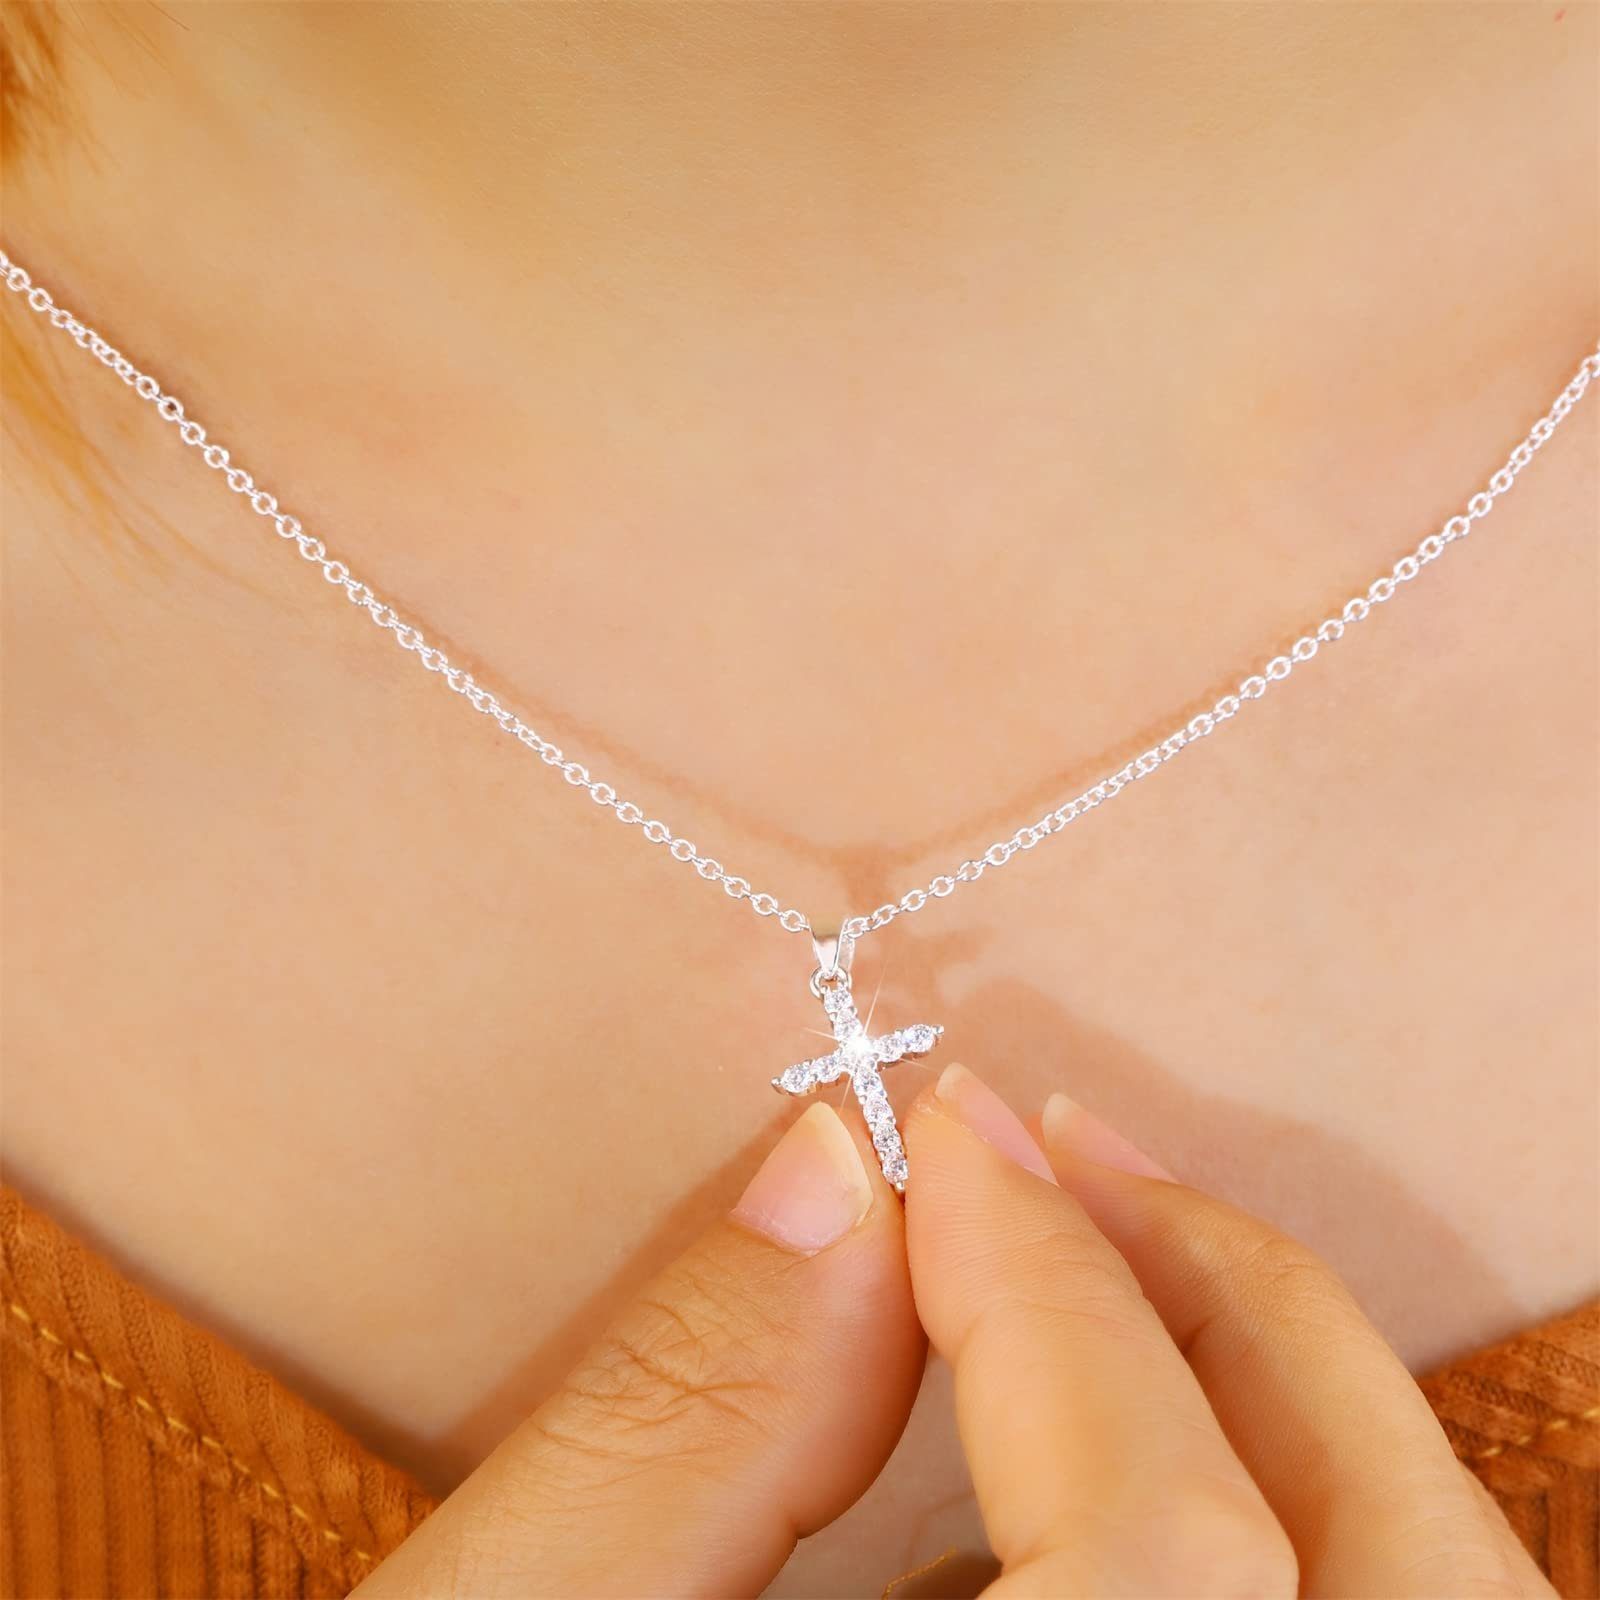 POCHUMIDUU Lange Kette Kreuzkette Silver für Zirkoniakette Kreuz mit Girls, Frauen